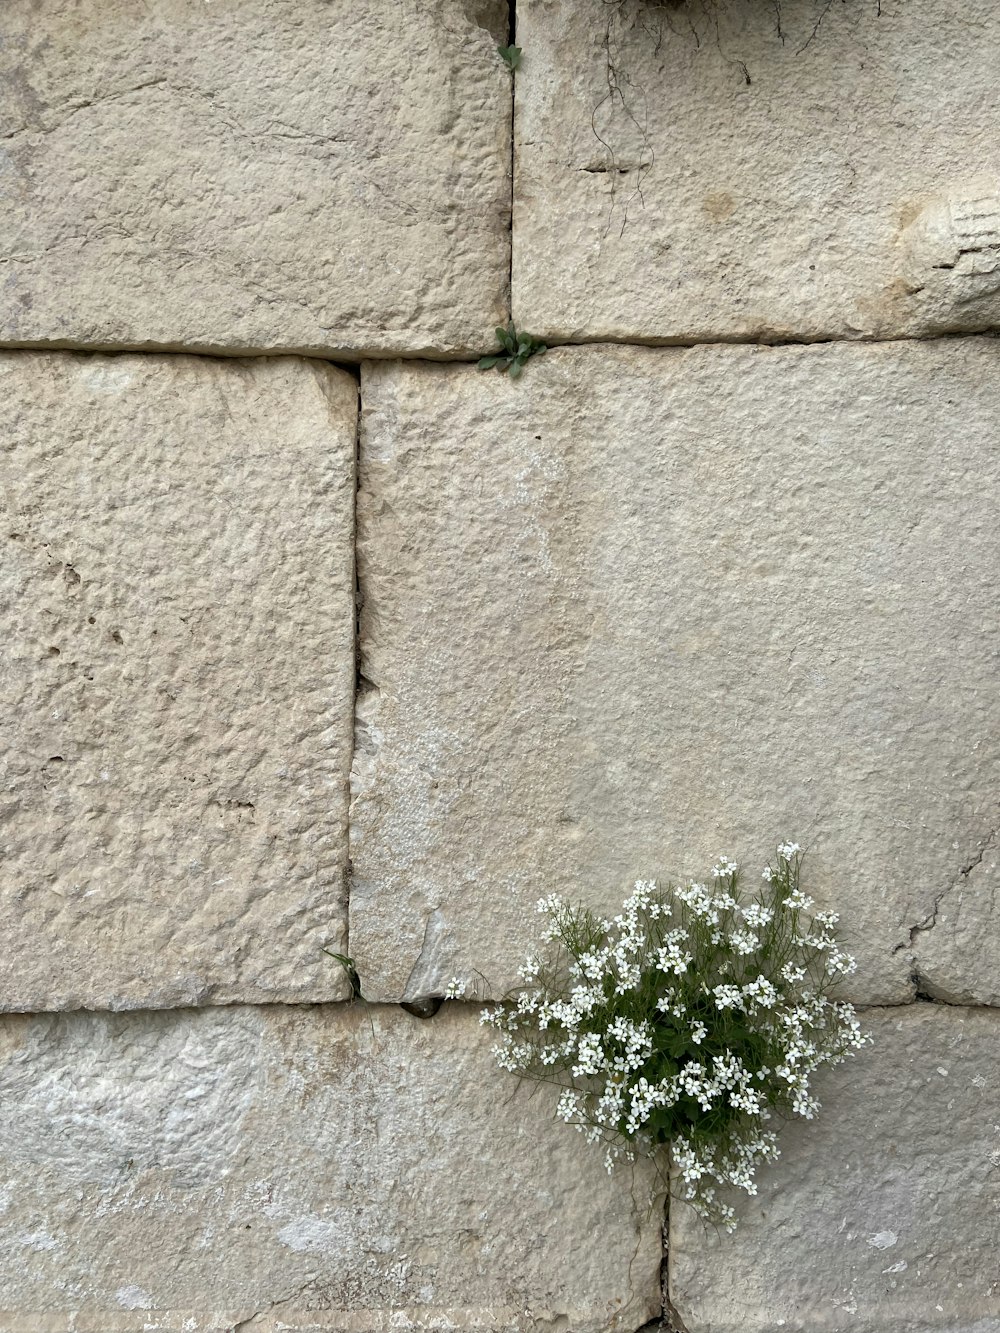 石垣の割れ目から生えている小さな白い花